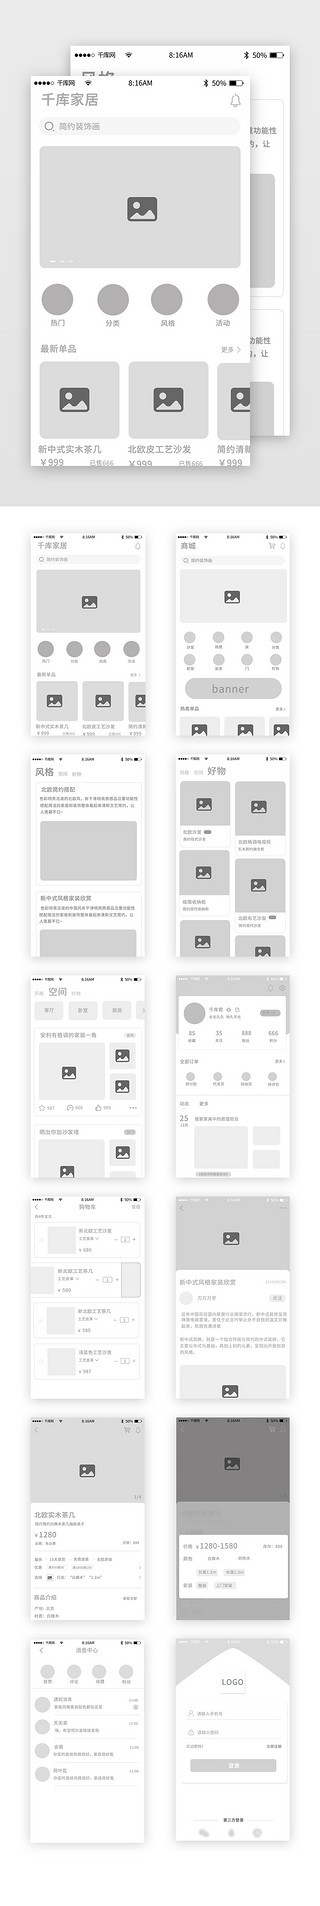 原型广场UI设计素材_家居类商城app原型图